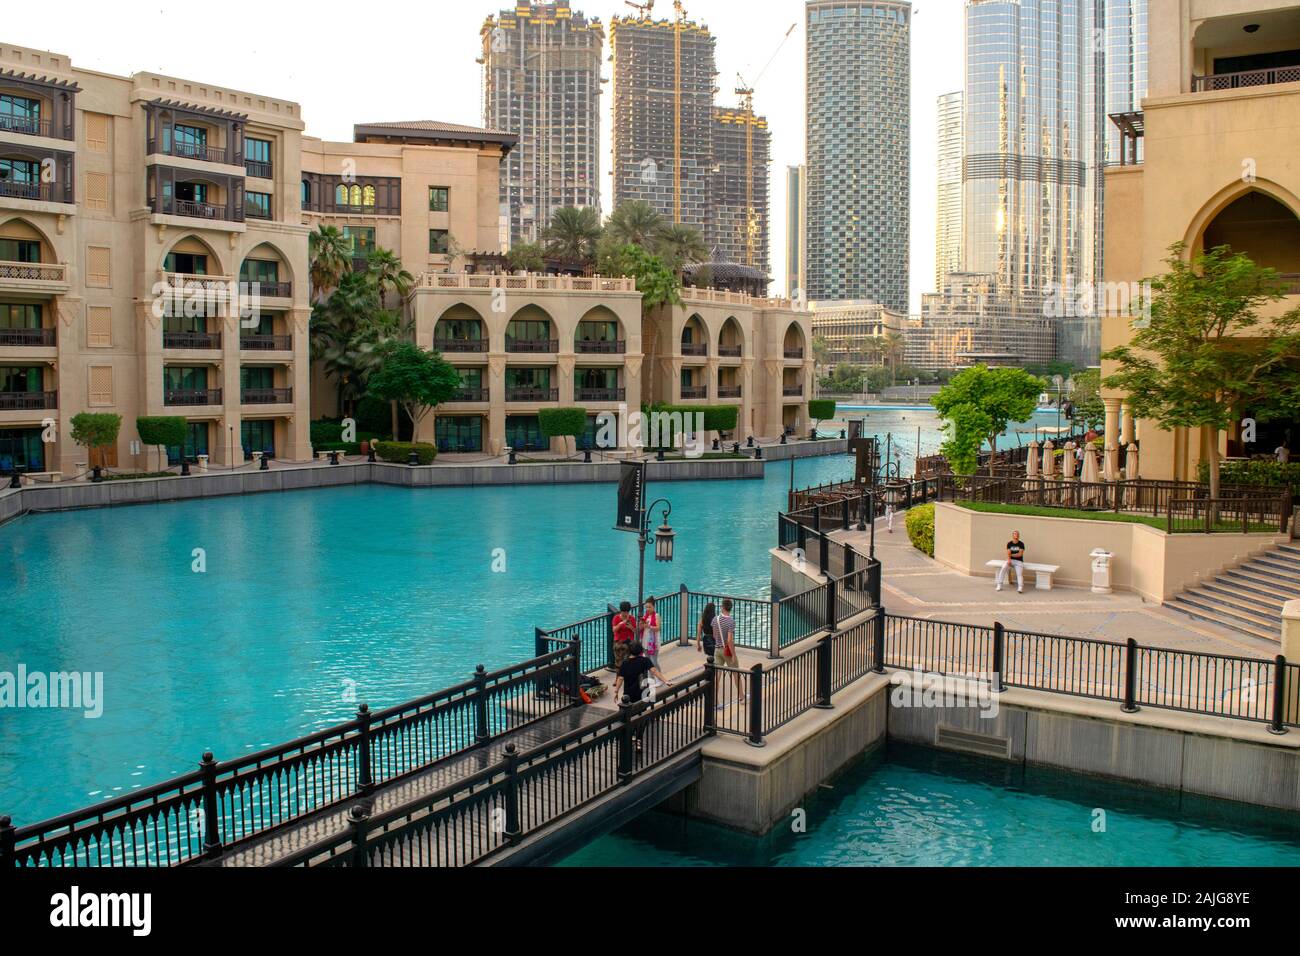 Dubaï / Emirats Arabes Unis - 5 novembre, 2019 : Souk Al Bahar avec bord de l'eau et des restaurants. Belle vue sur Dubai downtown district avec restaurants et souk. Banque D'Images